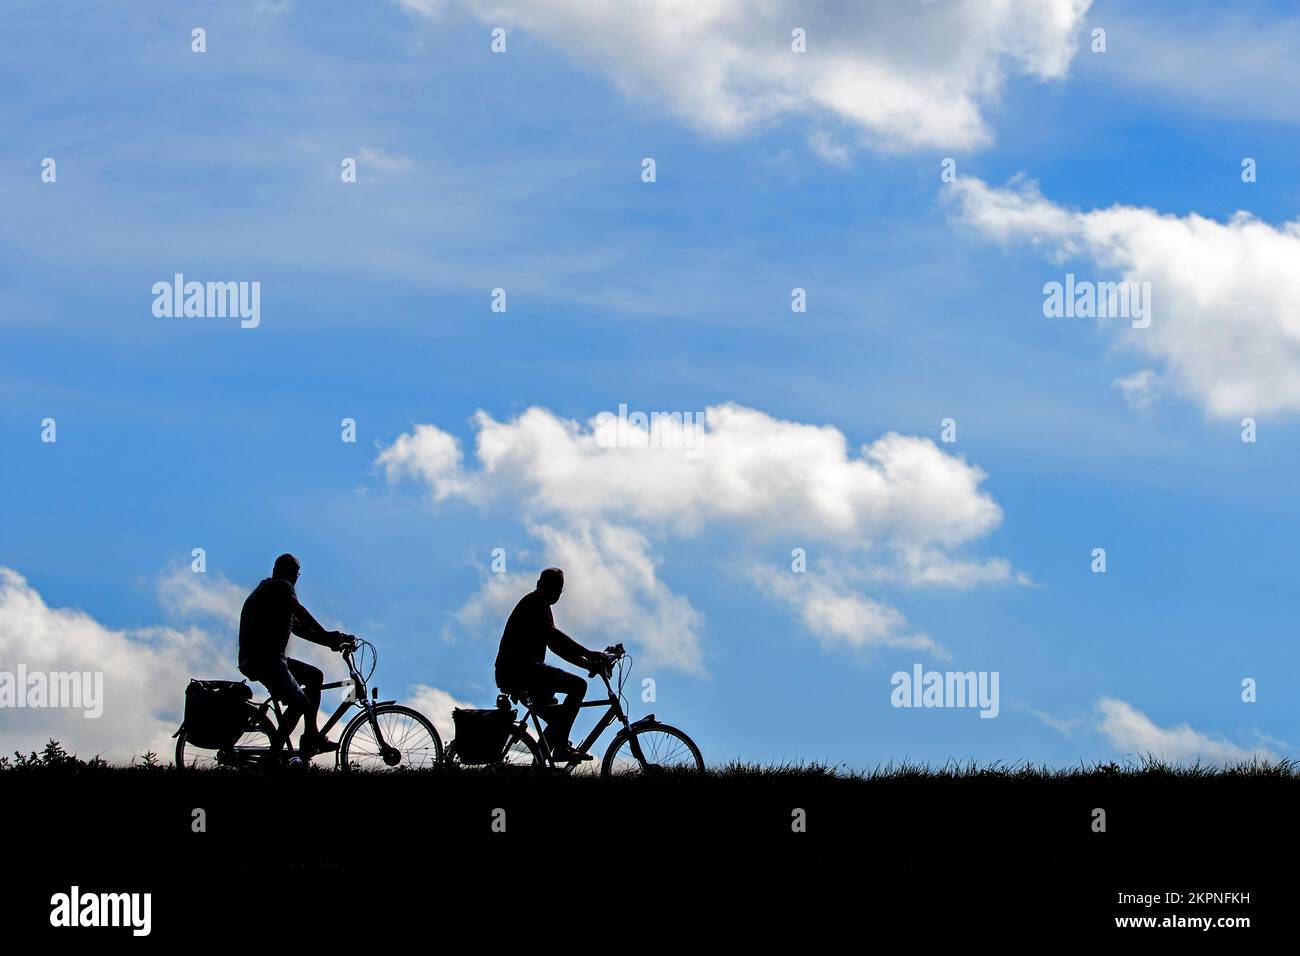 Dos viejos ciclistas perfilaban sus bicicletas contra el cielo nublado en verano Foto de stock